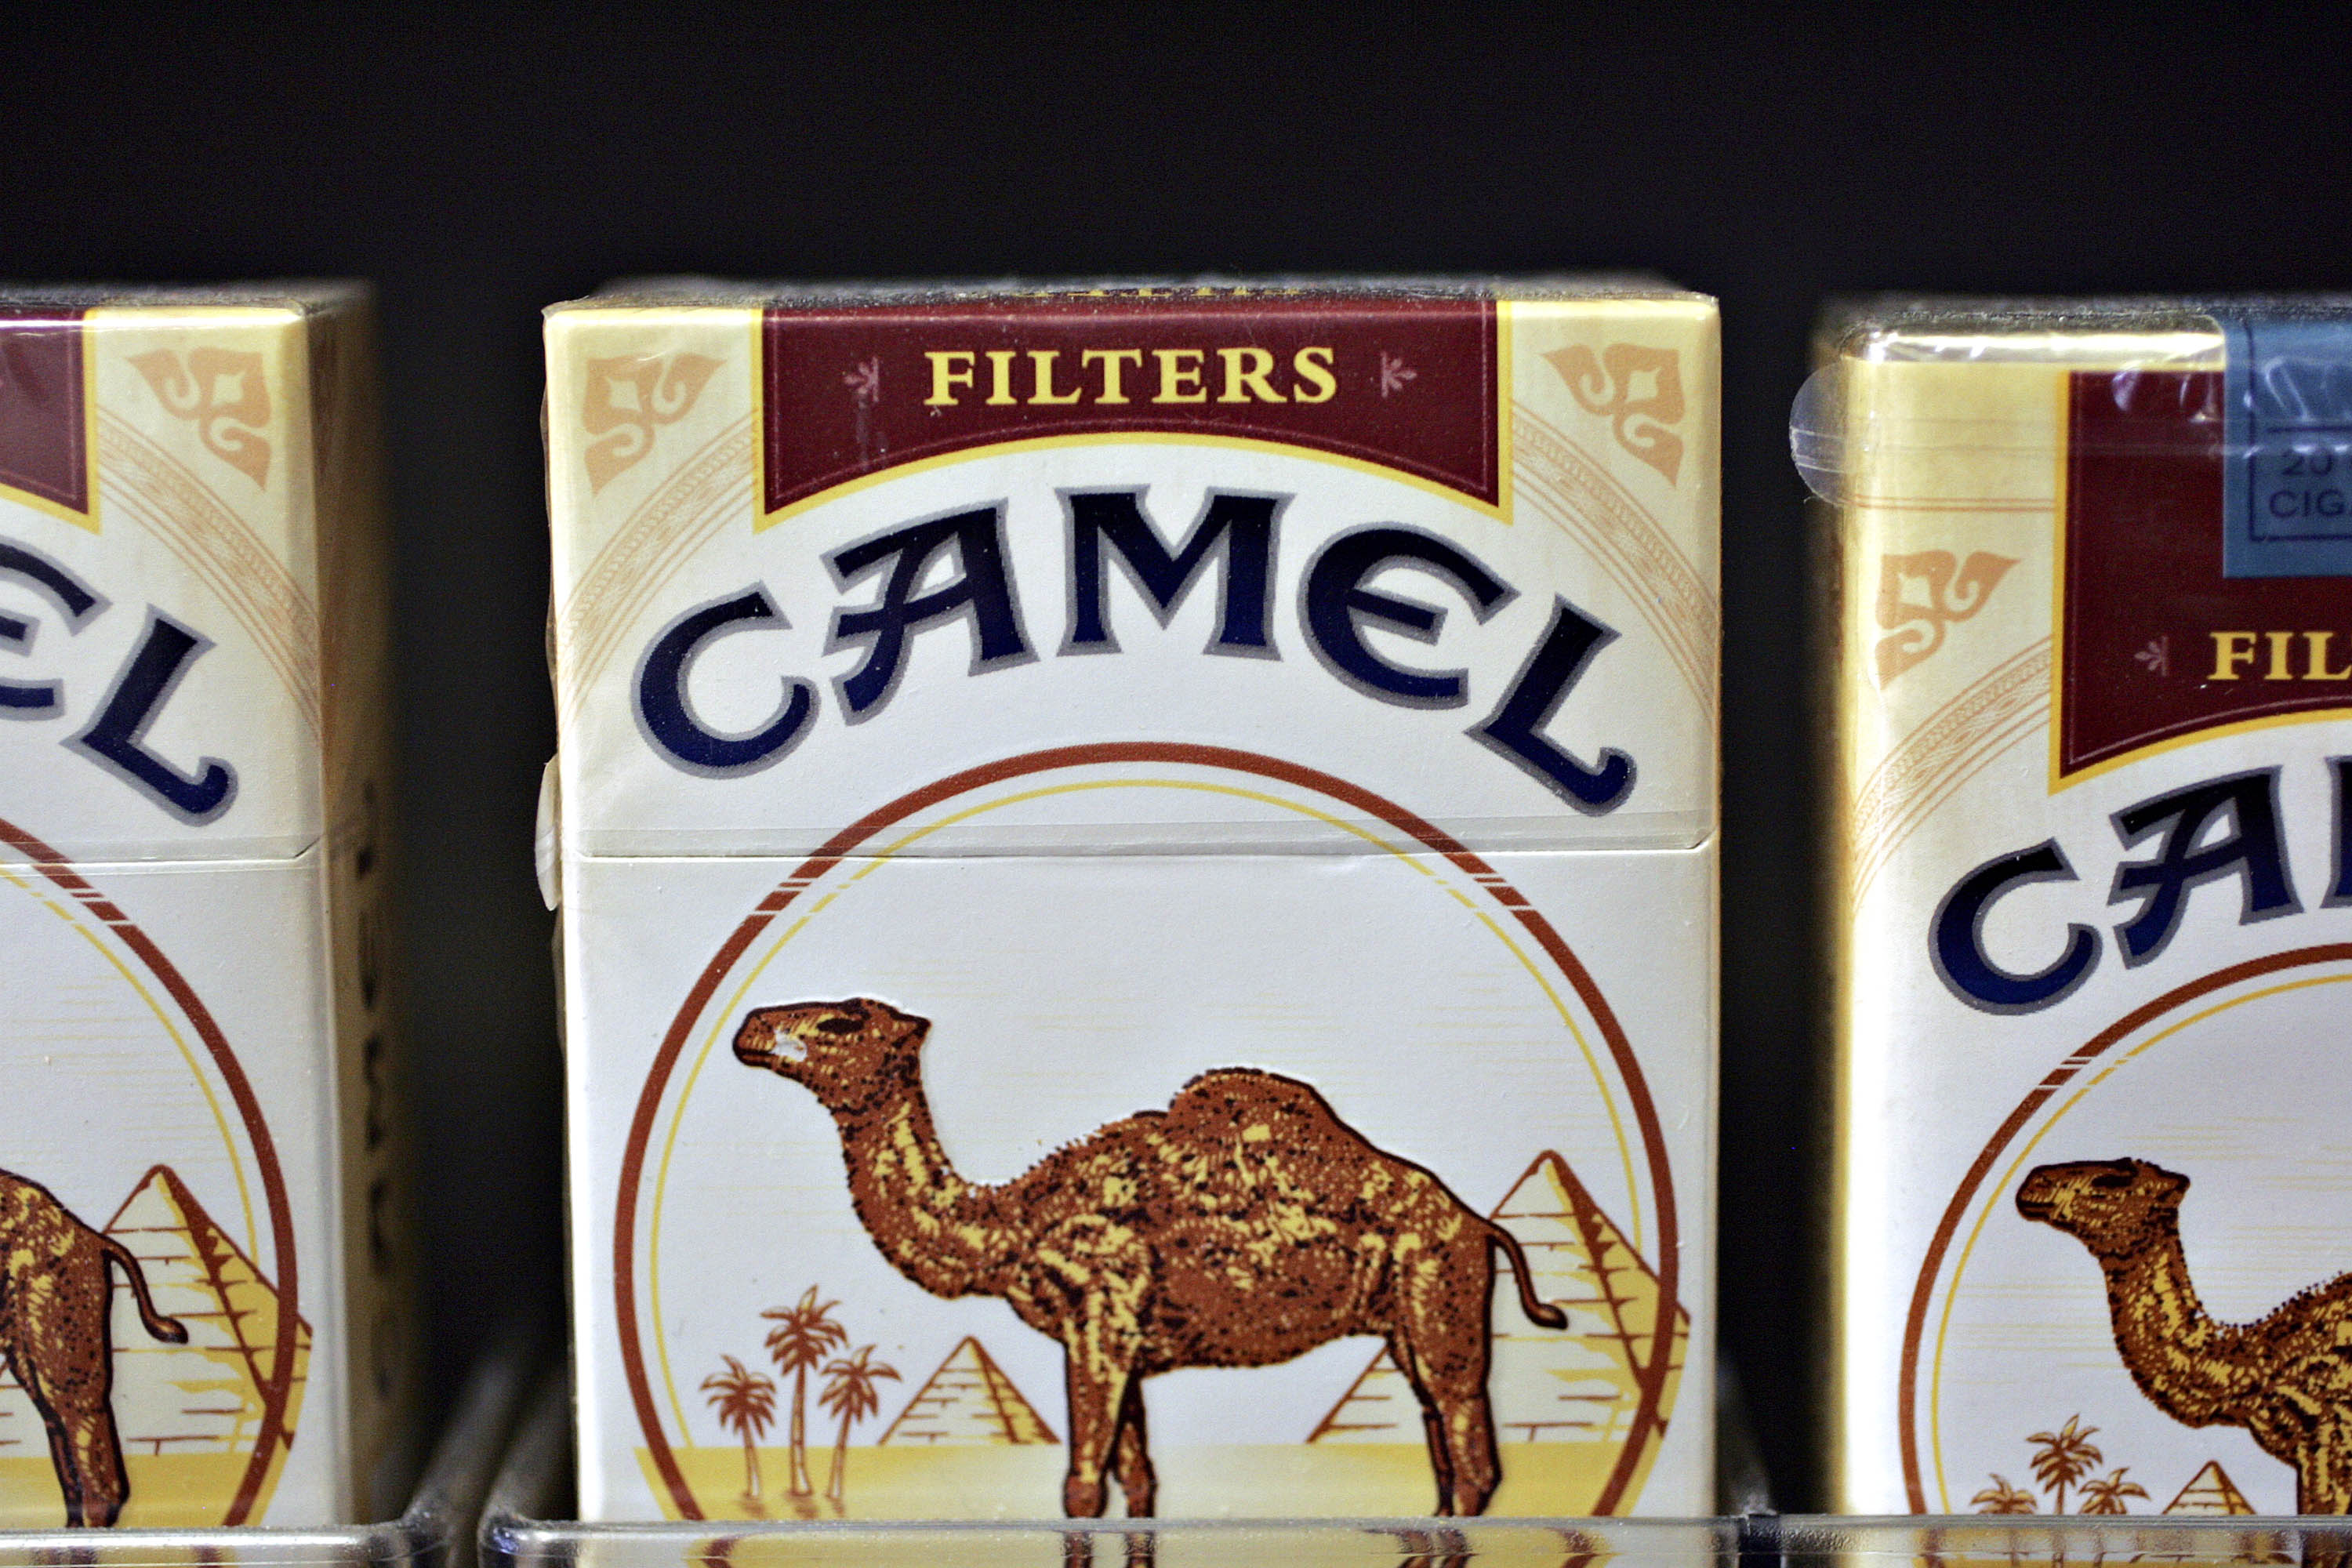 Camel Cigarettes